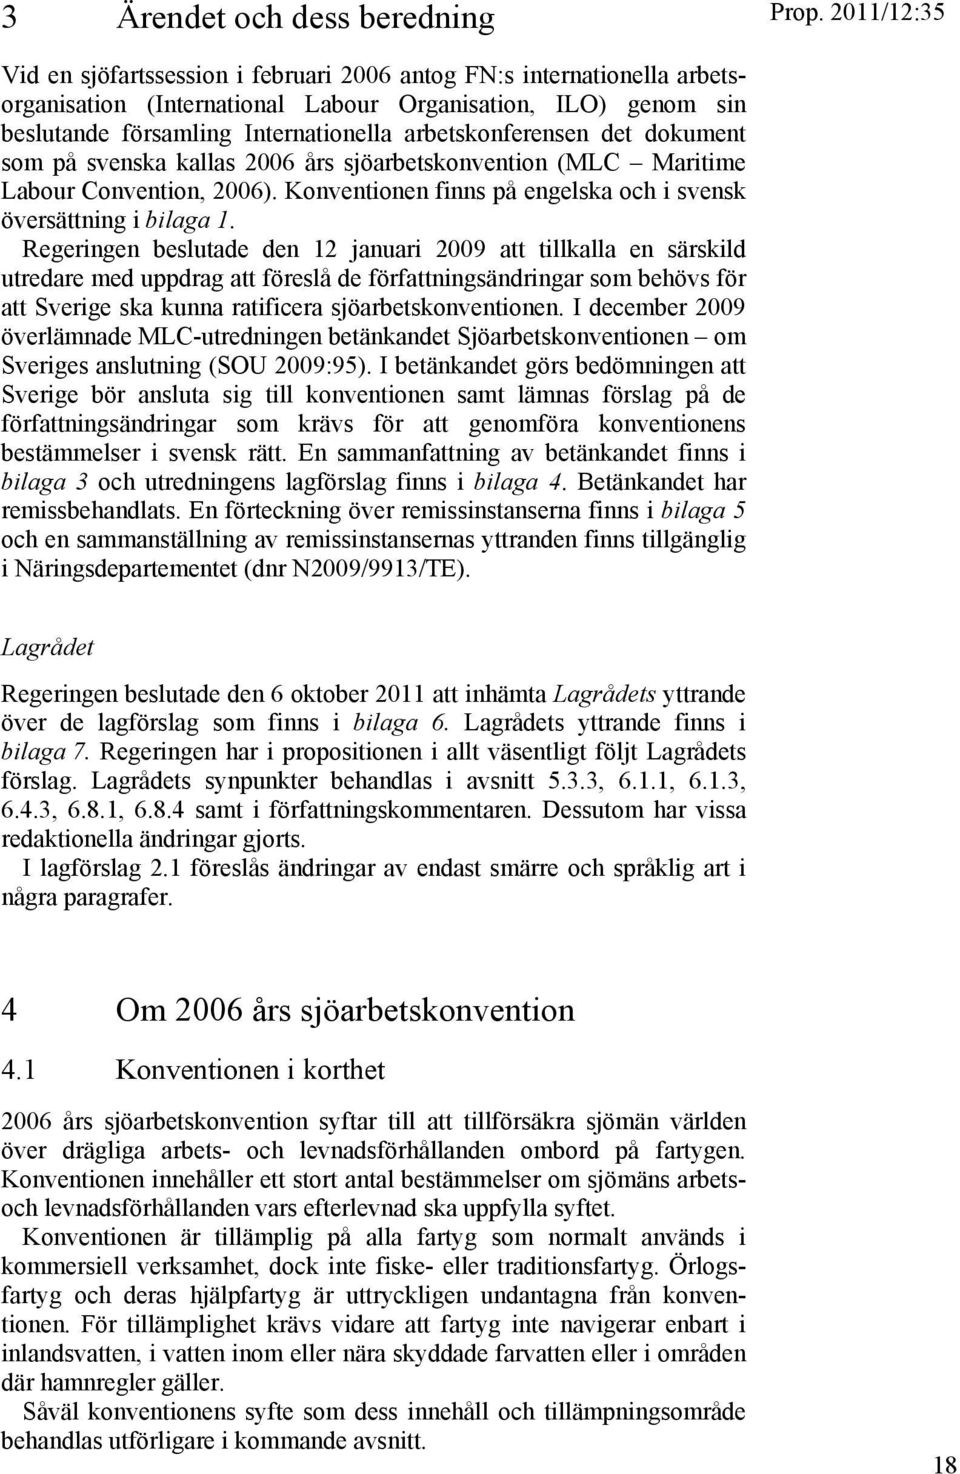 arbetskonferensen det dokument som på svenska kallas 2006 års sjöarbetskonvention (MLC Maritime Labour Convention, 2006). Konventionen finns på engelska och i svensk översättning i bilaga 1.